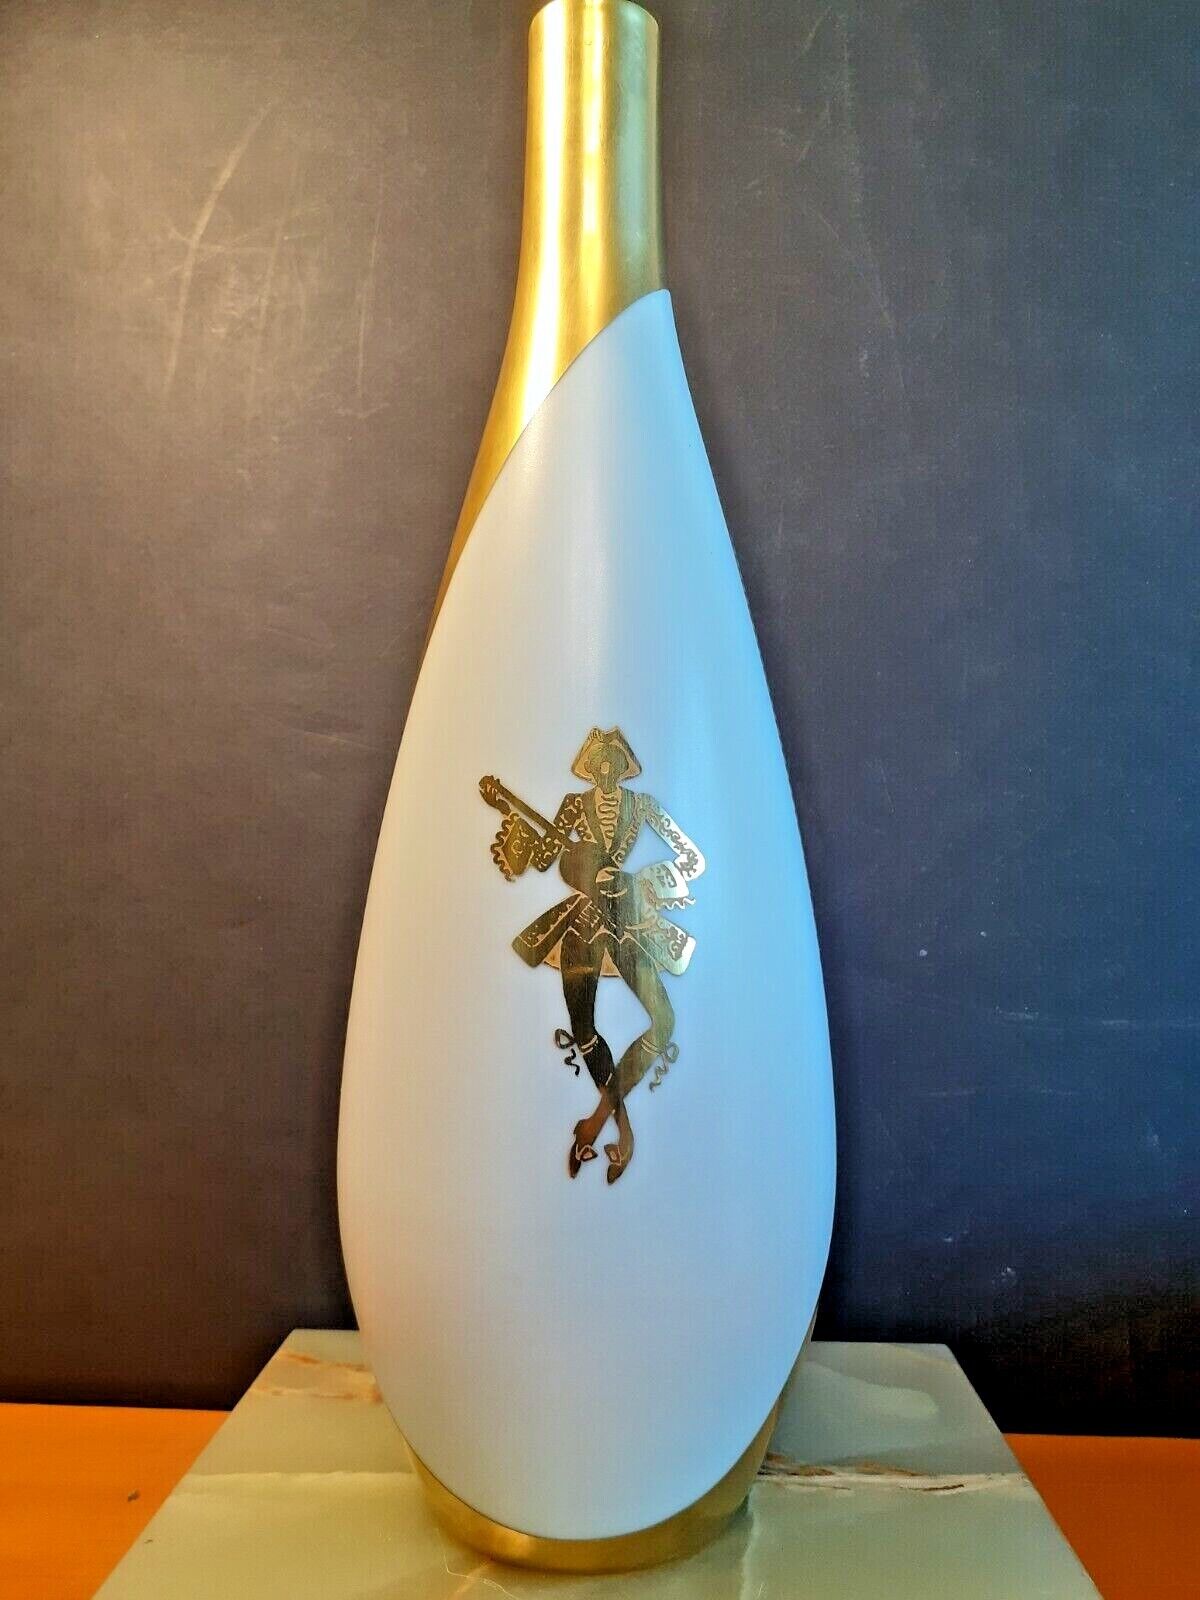 A Striking 24 karat Gold porcelain Vase in Excellent Condition by Arrigo Finzi.